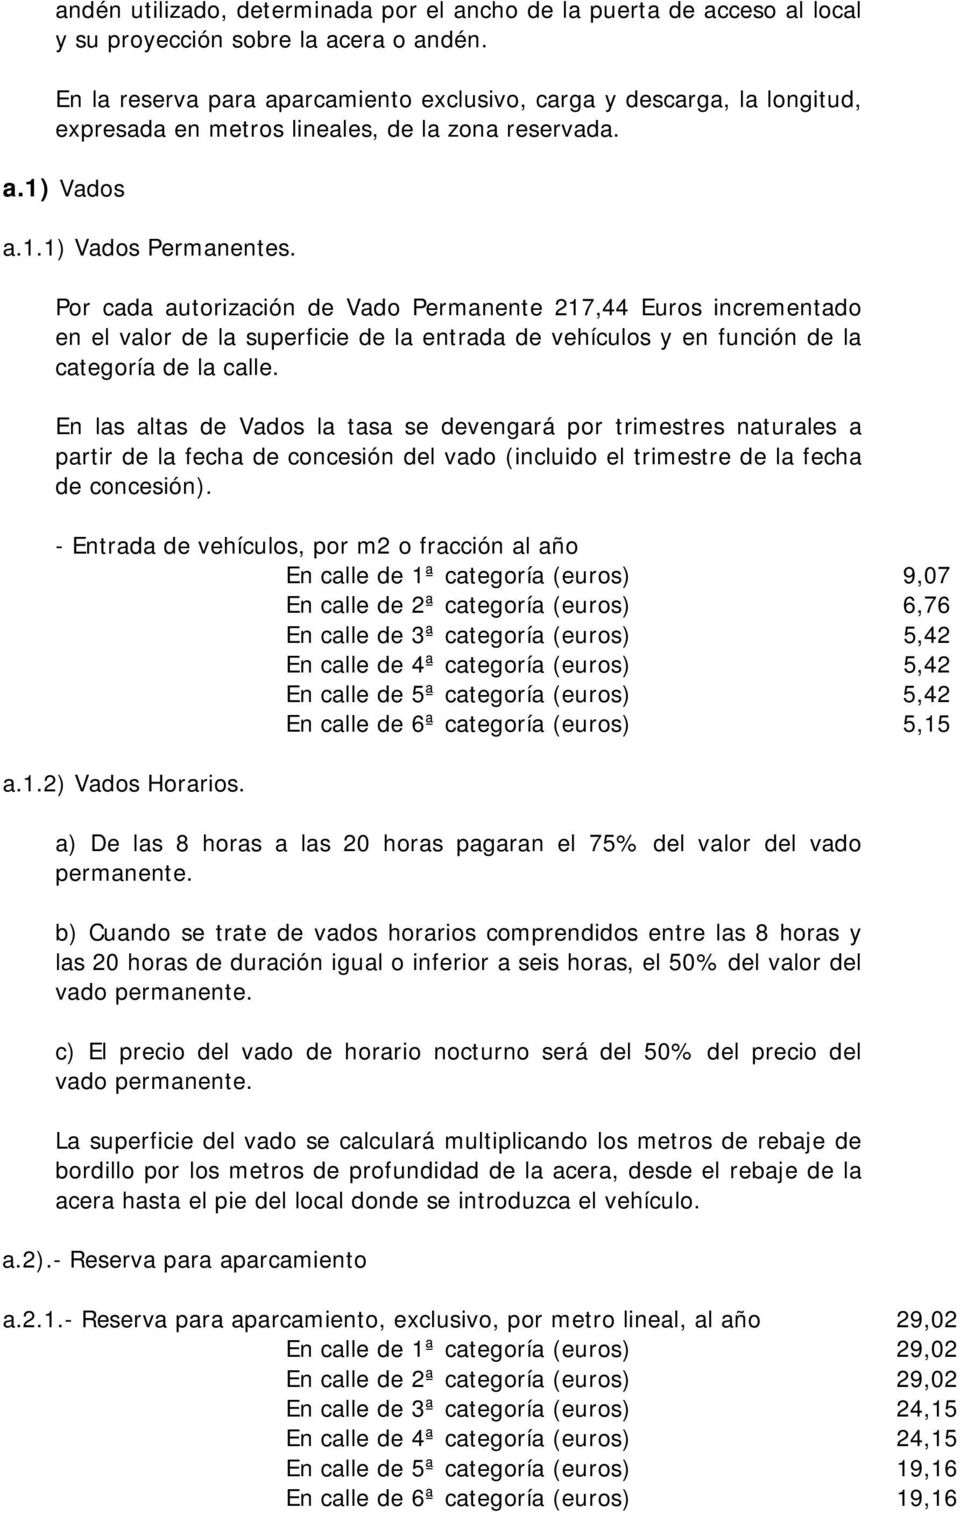 Por cada autorización de Vado Permanente 217,44 Euros incrementado en el valor de la superficie de la entrada de vehículos y en función de la categoría de la calle.